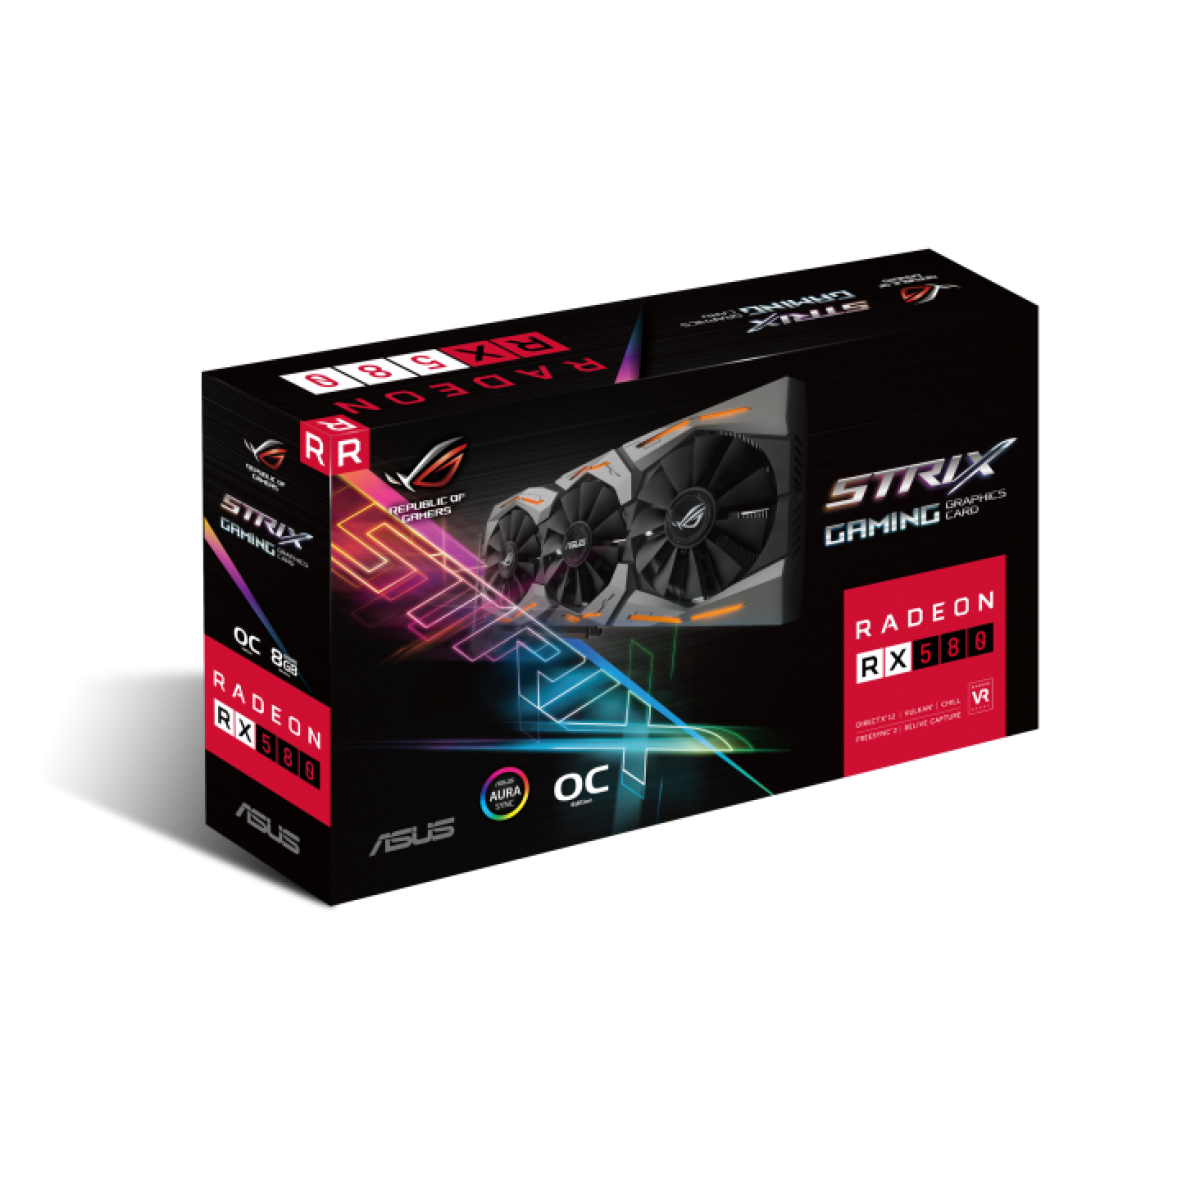 Placa de Vídeo Asus ROG Strix Radeon RX 580 OC, 8GB, GDDR5, 192bit, ROG-STRIX-RX580-O8G-GAMING